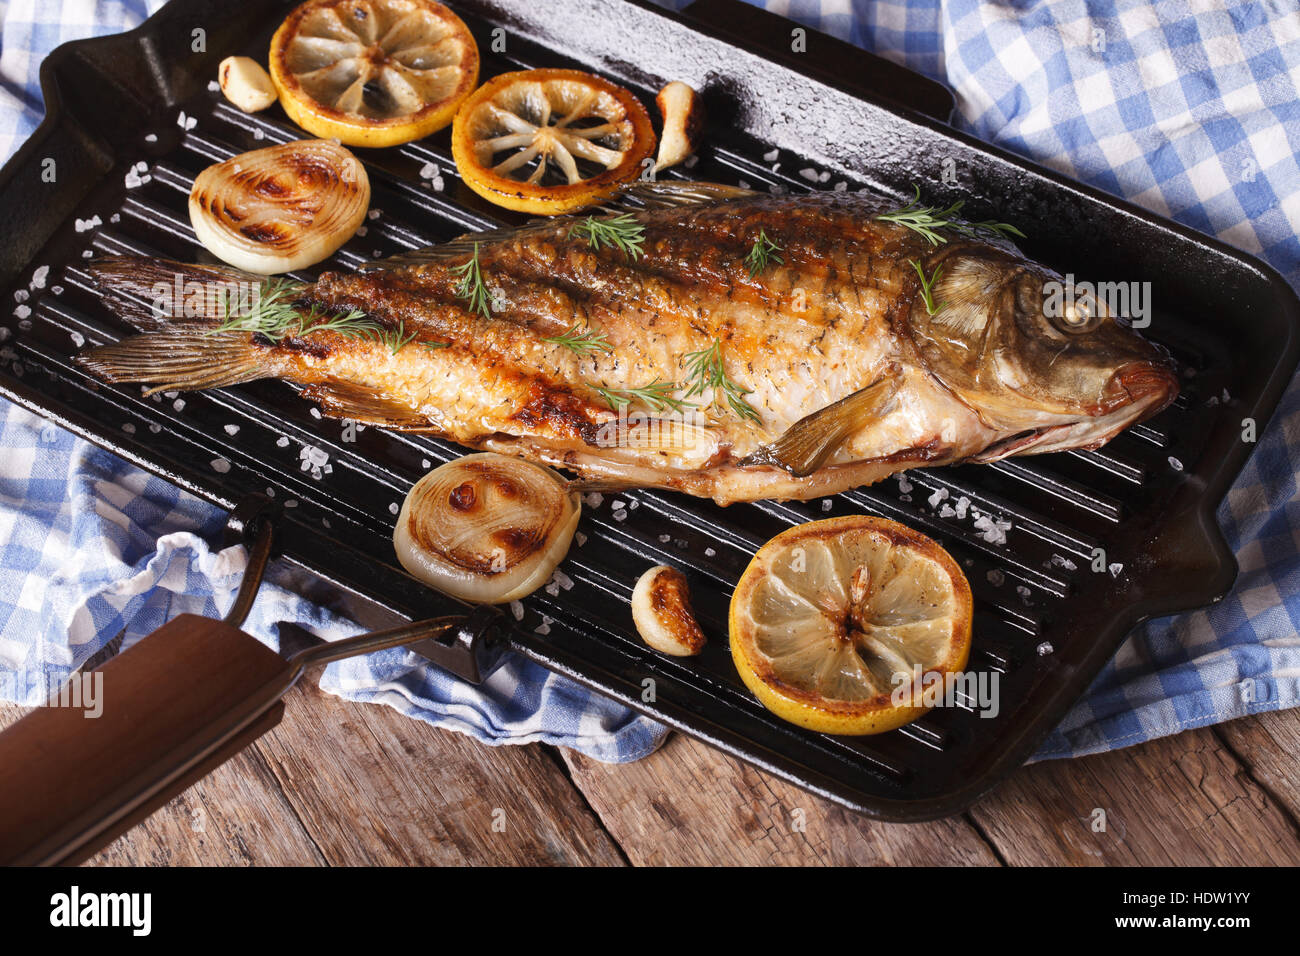 Gegrillter Fisch Karpfen mit Zitrone auf einer Pfanne Grill, horizontale  Nahaufnahme, rustikalen Stil Stockfotografie - Alamy